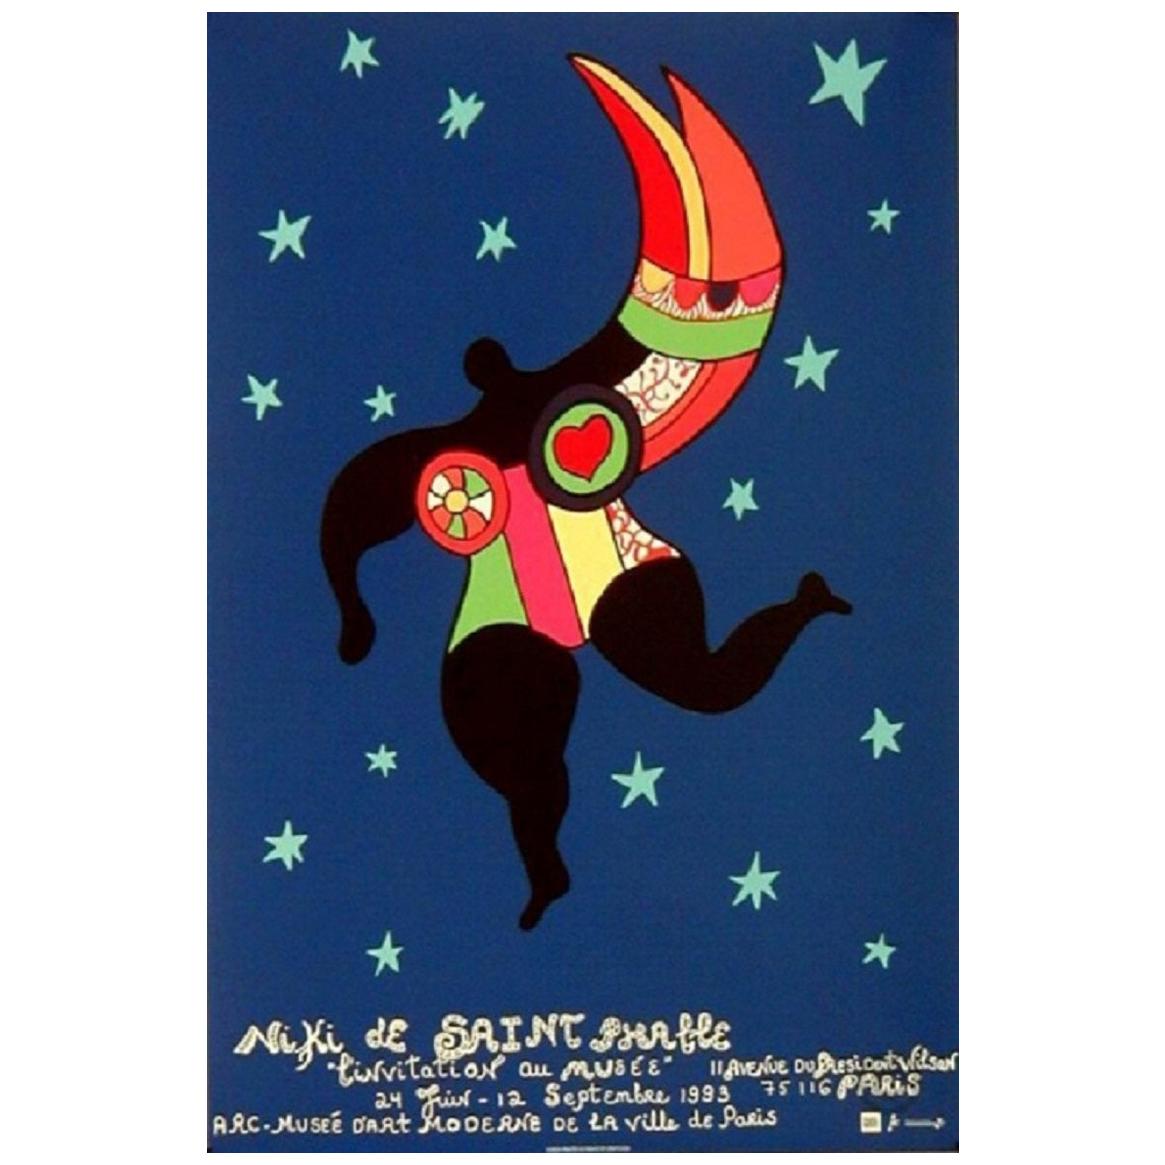 Niki de Saint Phalle, Small Original Vintage Poster